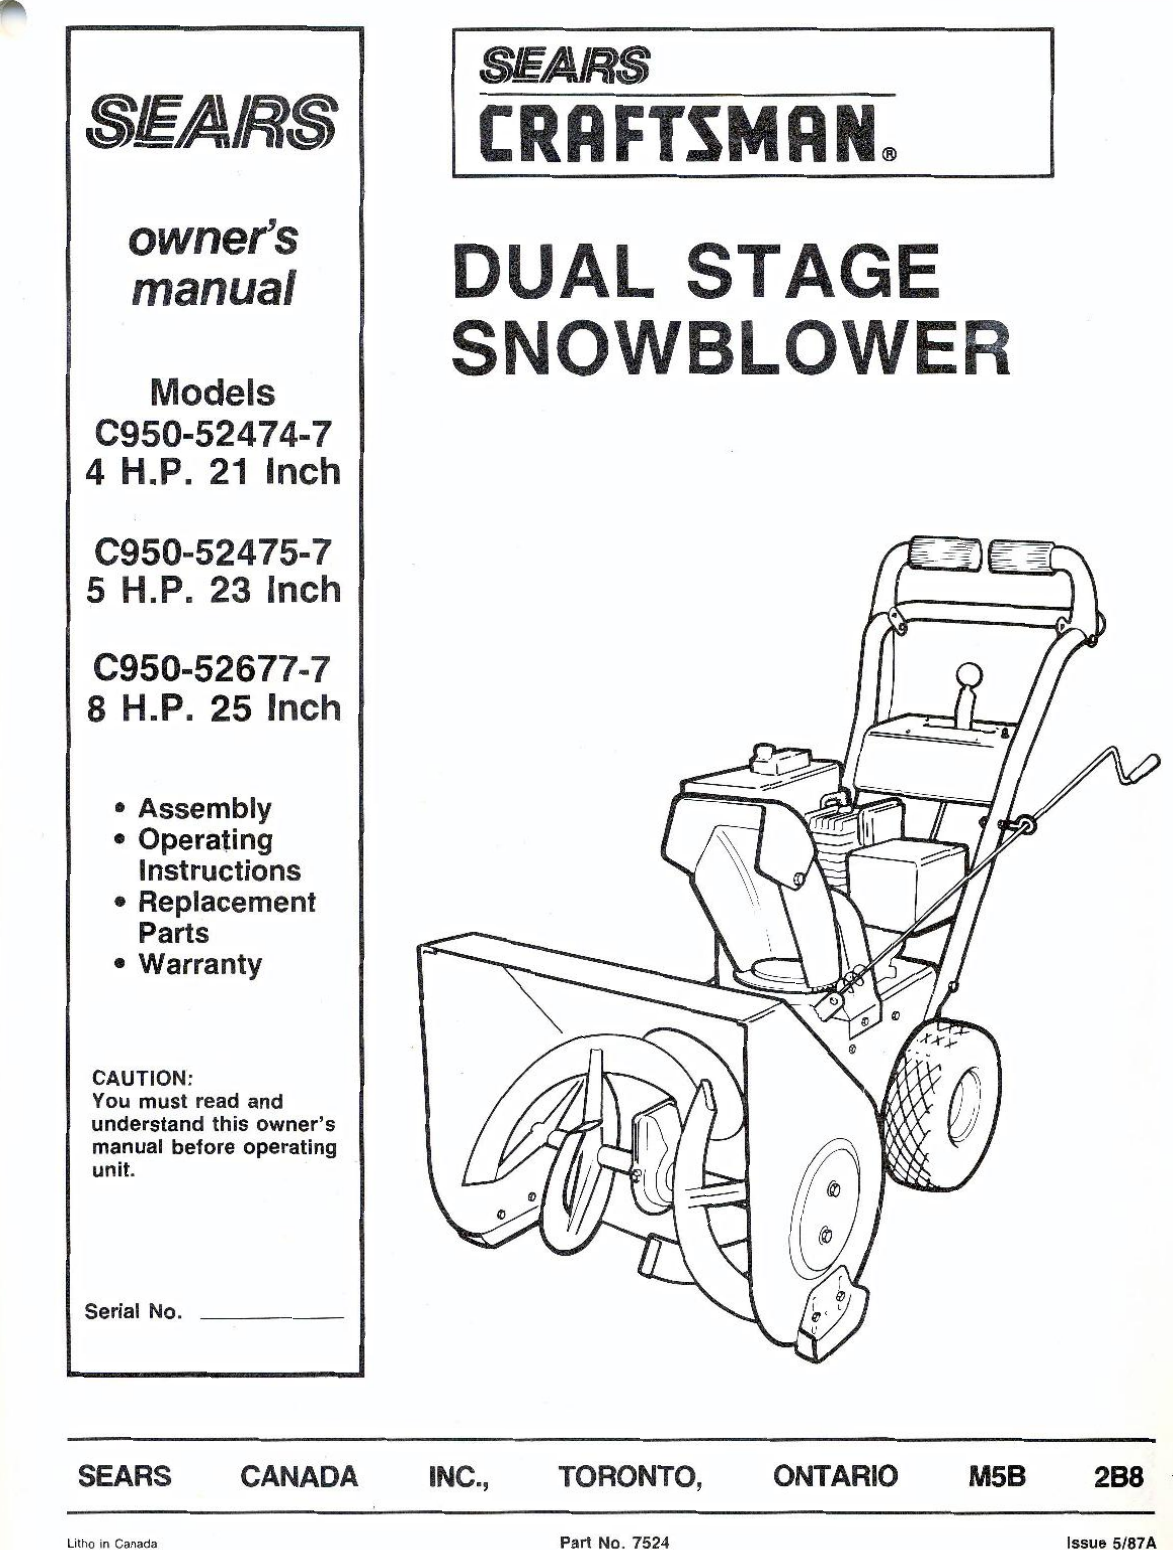 craftsman sears 8hp 25" c950-52677 Snowblowers carburetor carb 